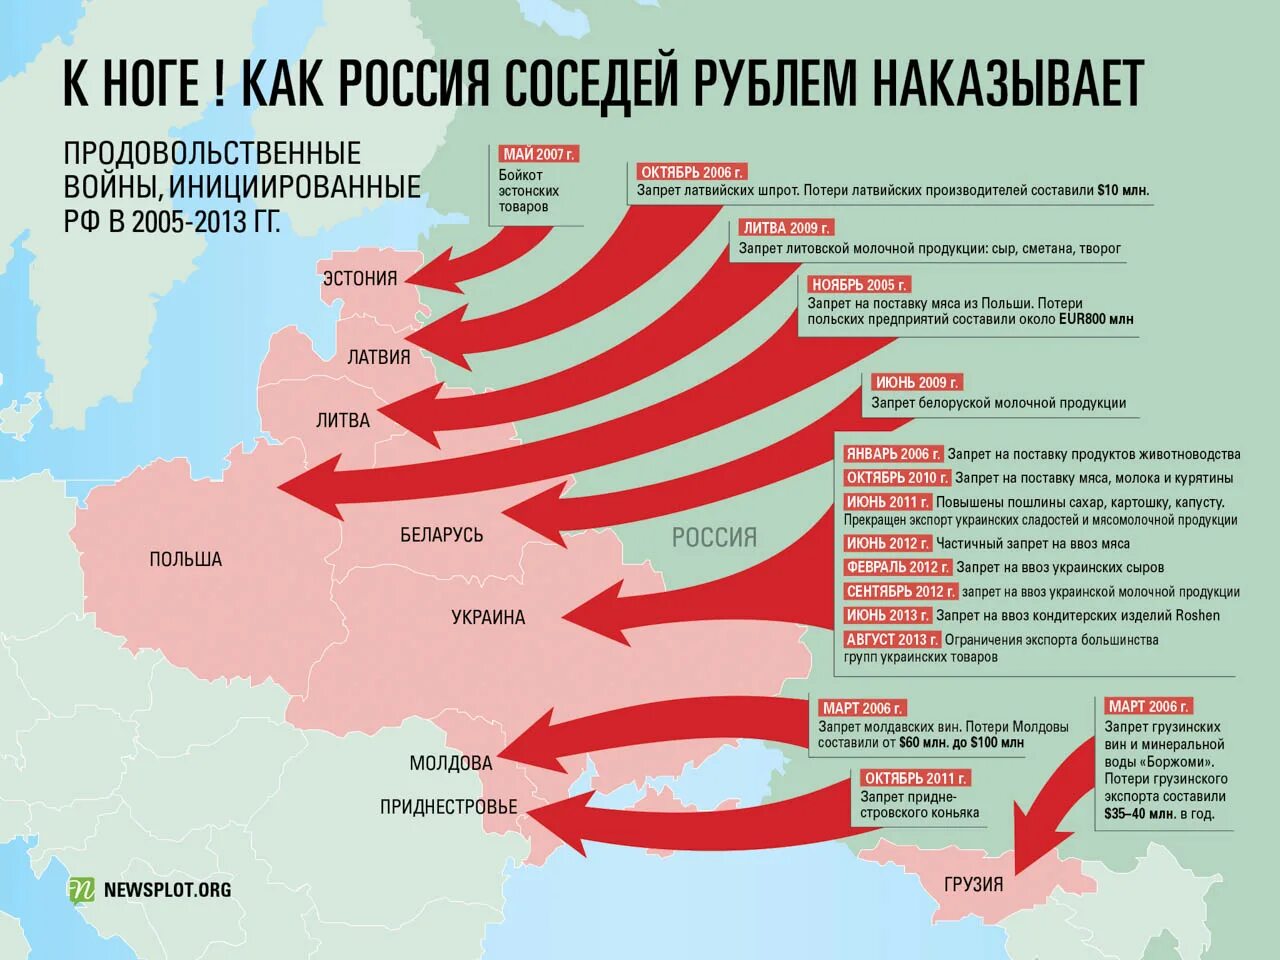 План вторжения на Украину. Карта вайна Росси в Украину. Стары которые воюют с Украиной. Государство, с которым воевала Россия. Анализ военных операций